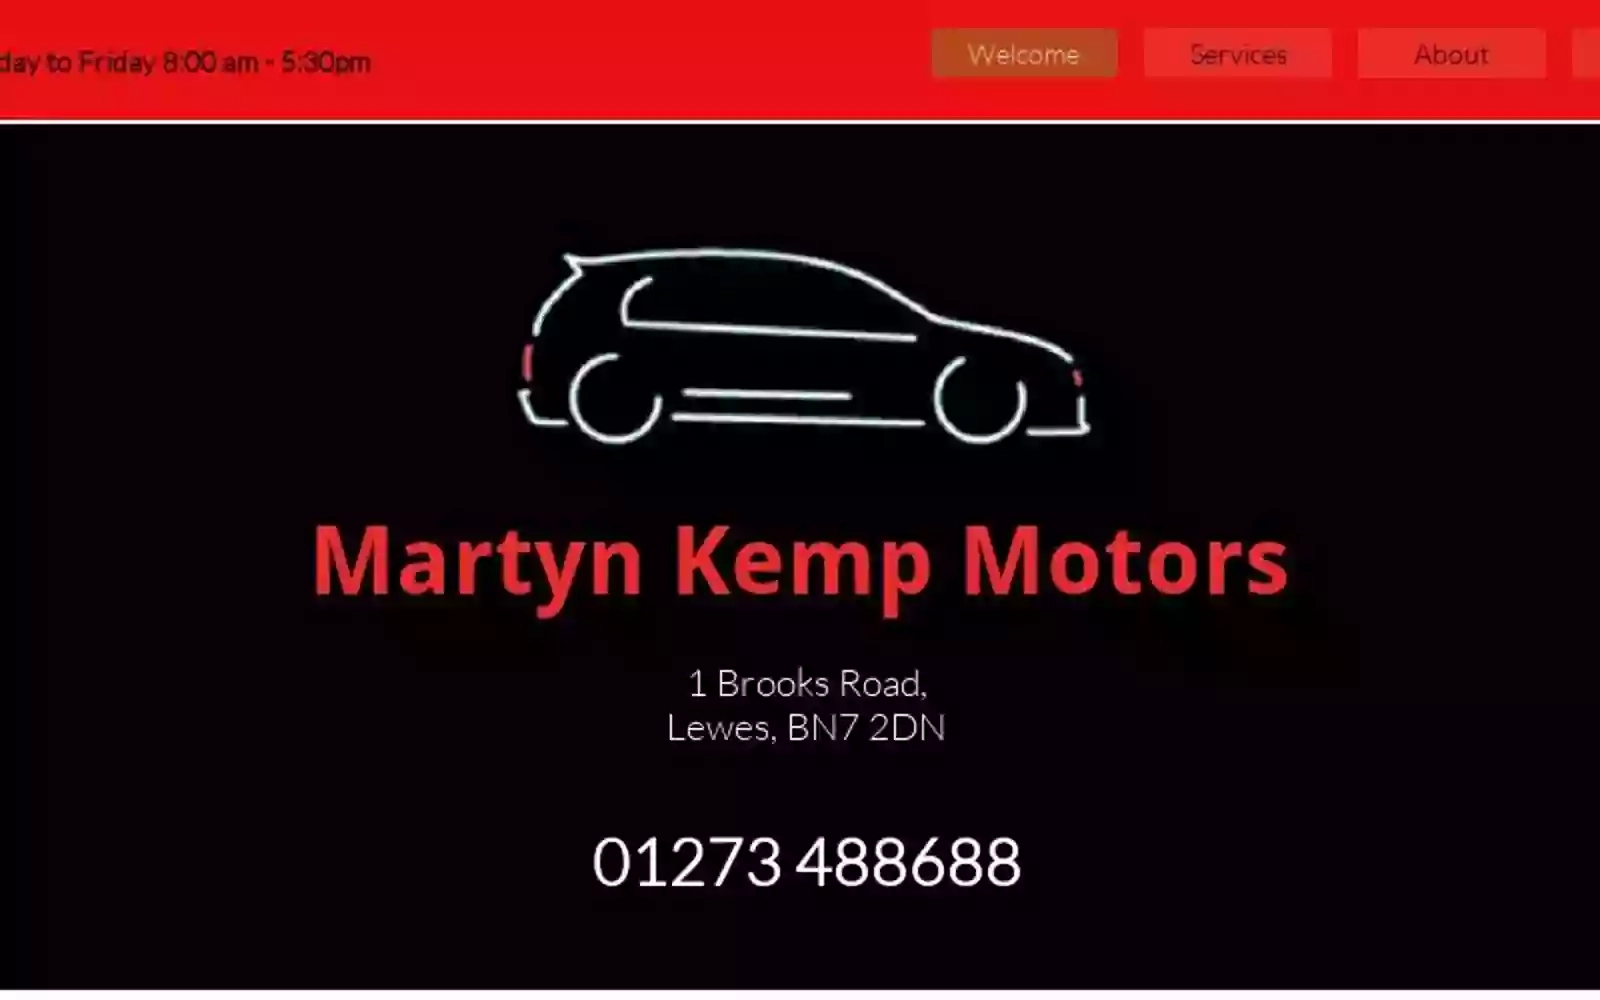 Martyn Kemp Motors